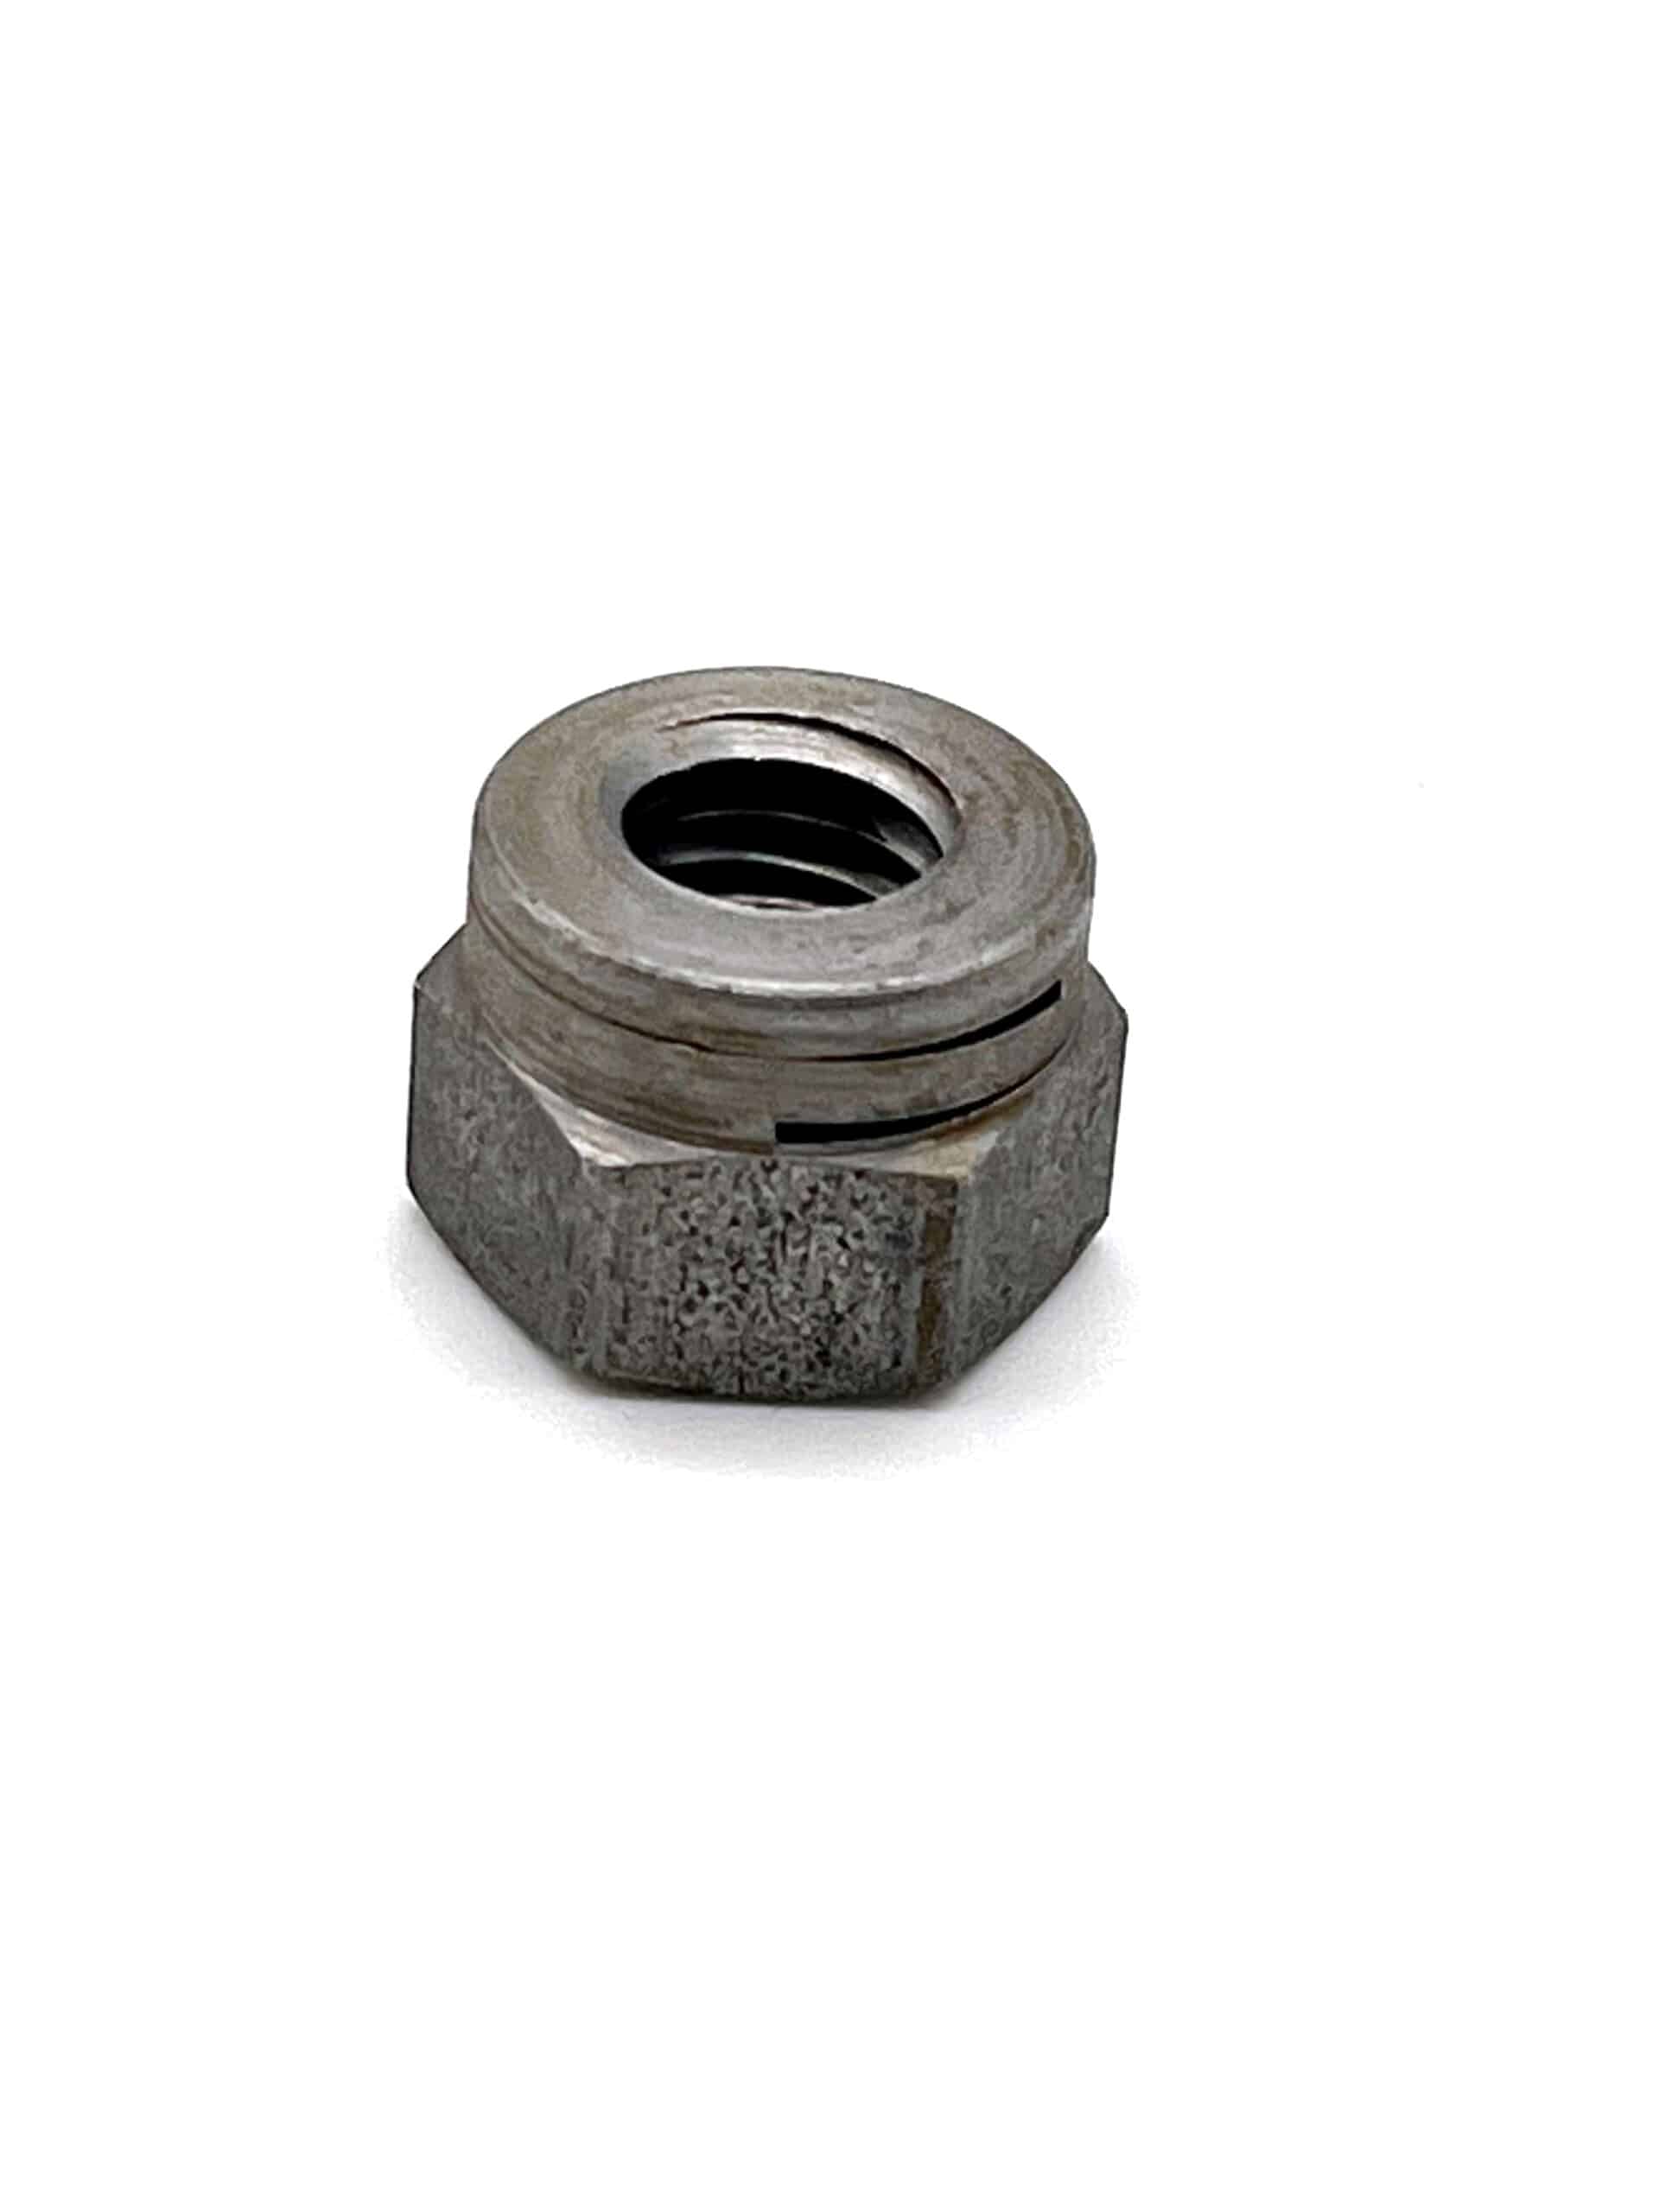 Turret All Metal Locking Nuts